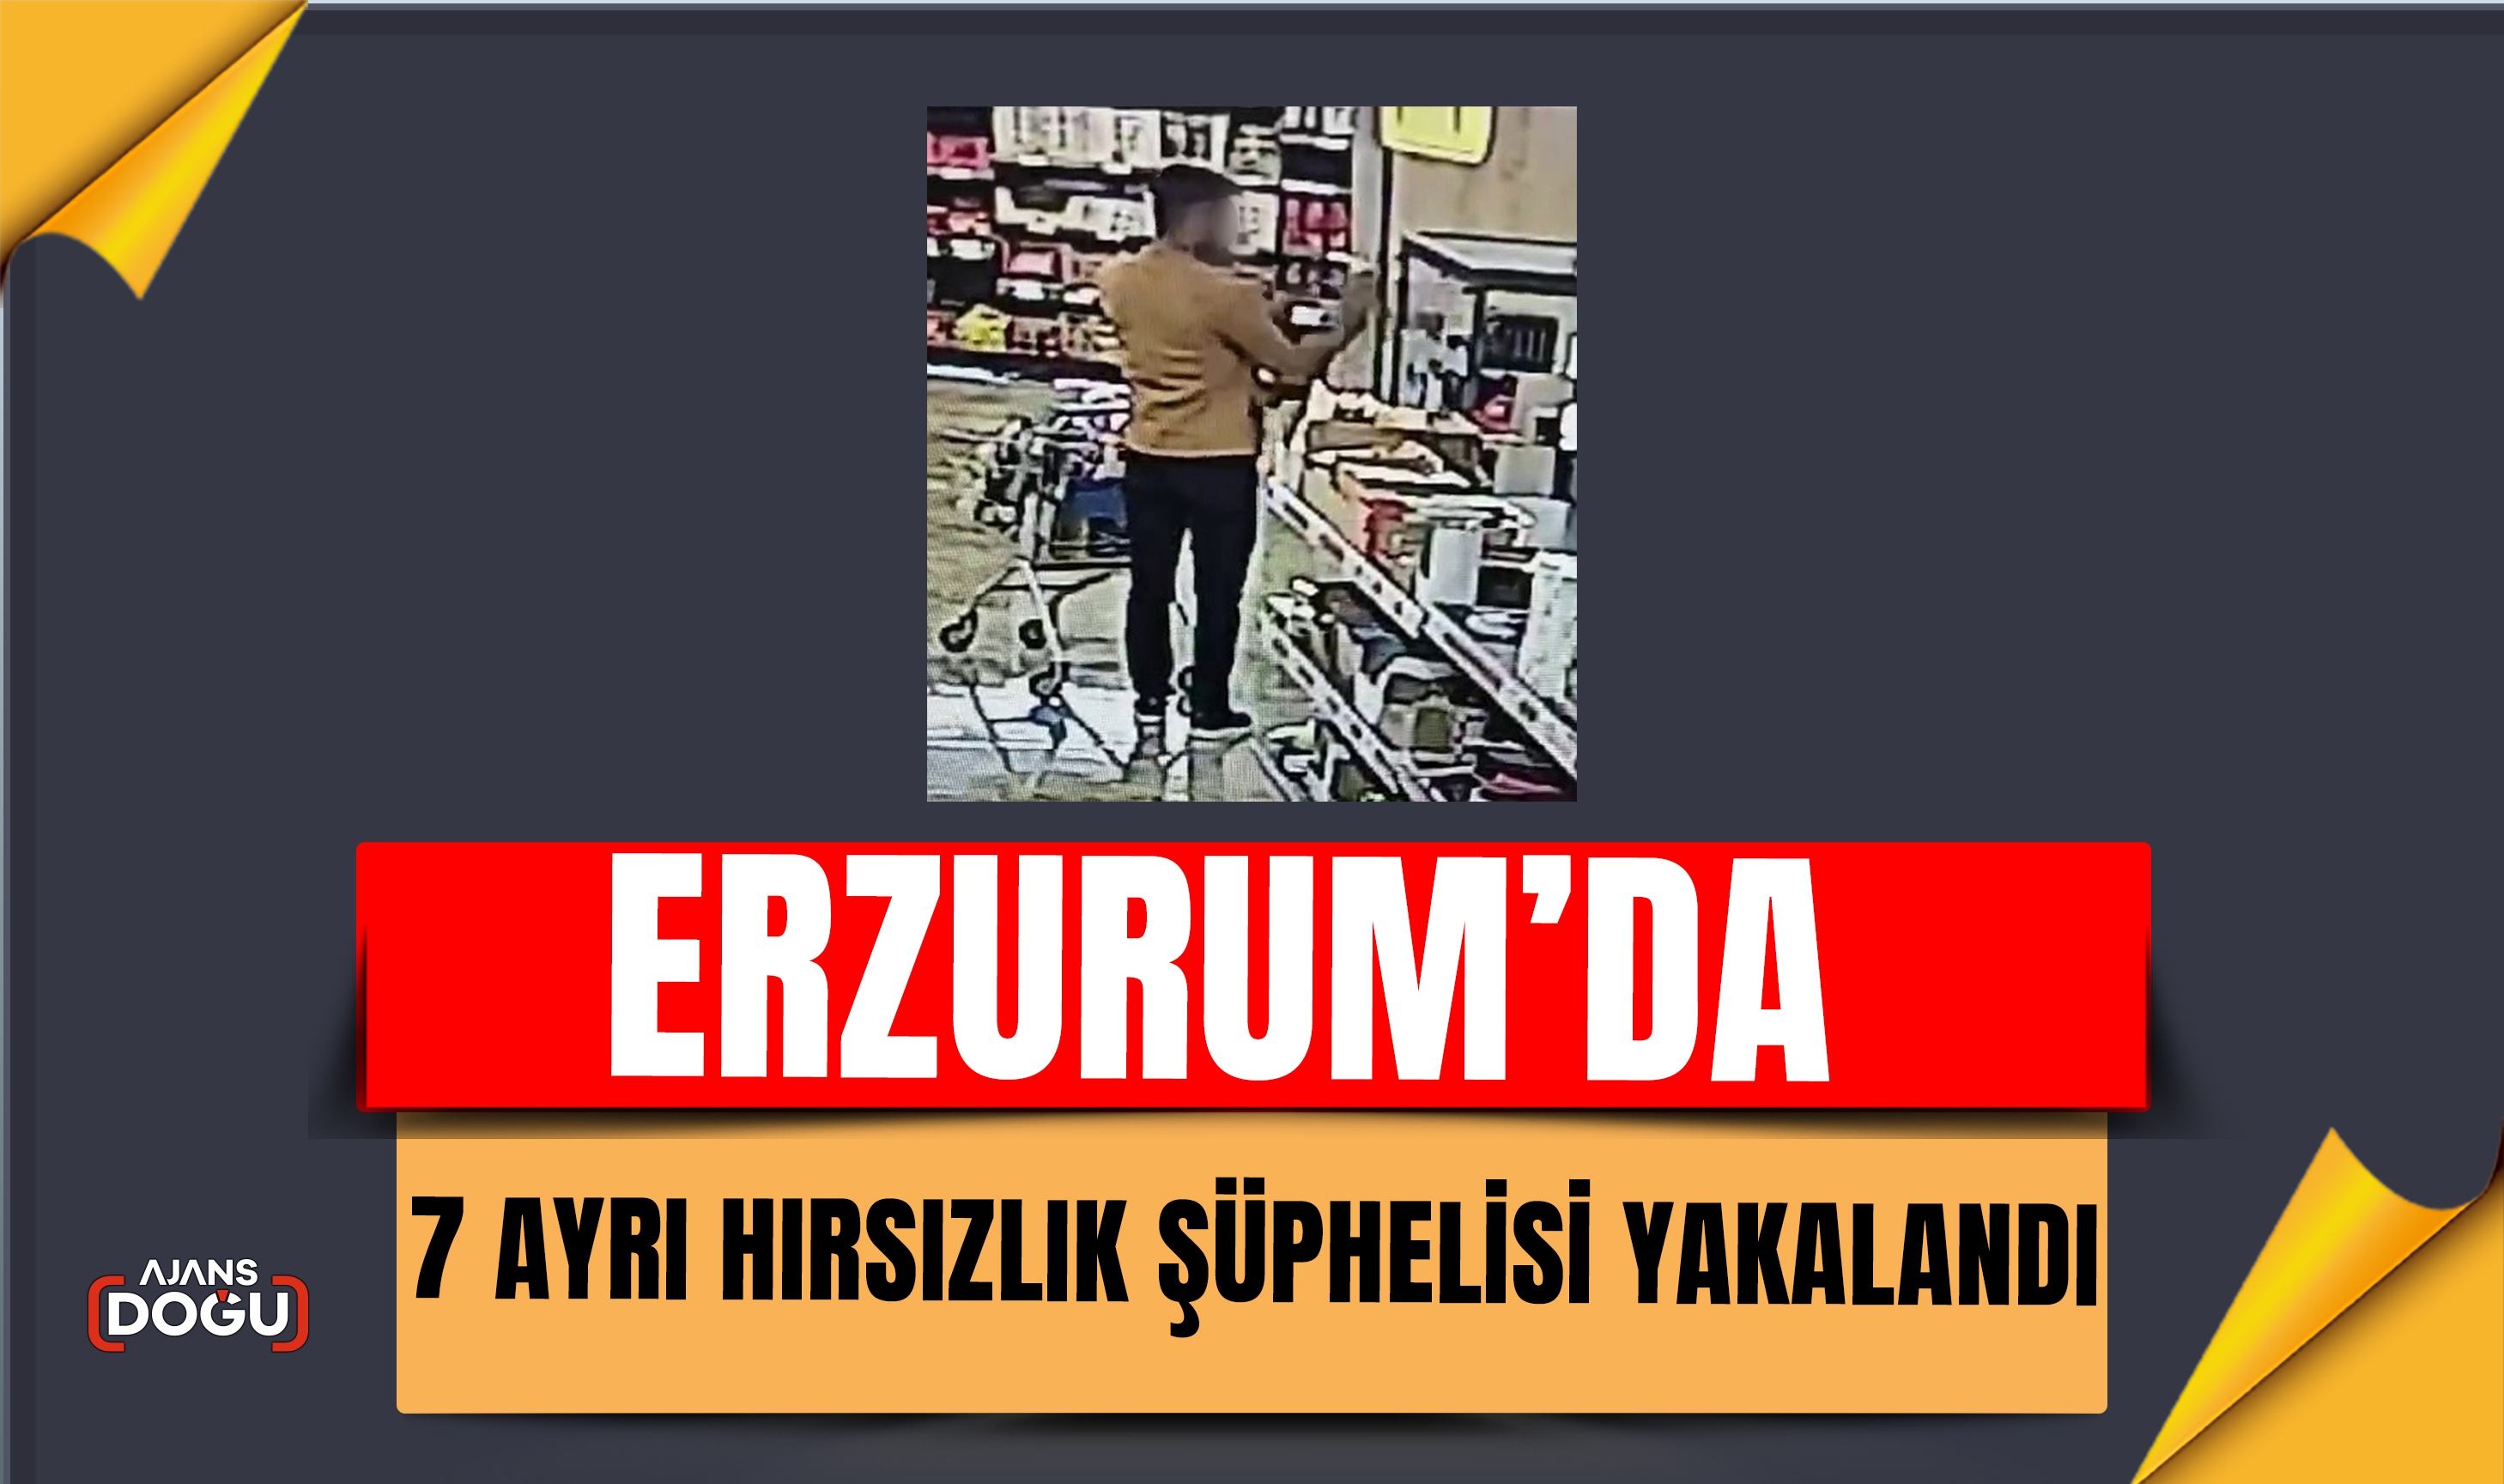 Erzurum'da 7 ayrı hırsızlık şüphelisi yakalandı